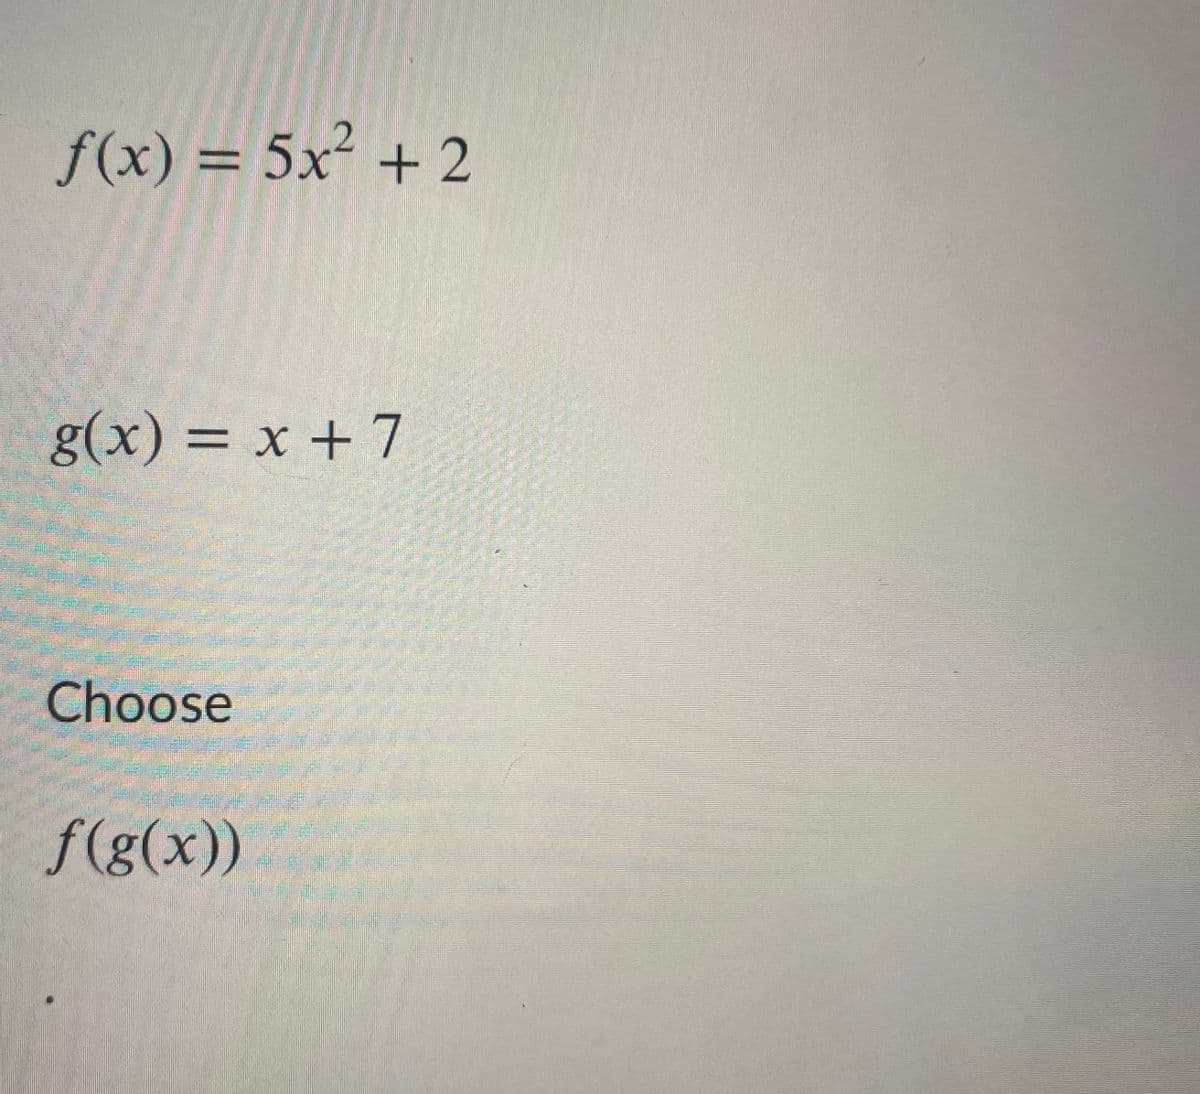 f(x) = 5x² + 2
g(x) = x + 7
%3|
Choose
f(g(x))
